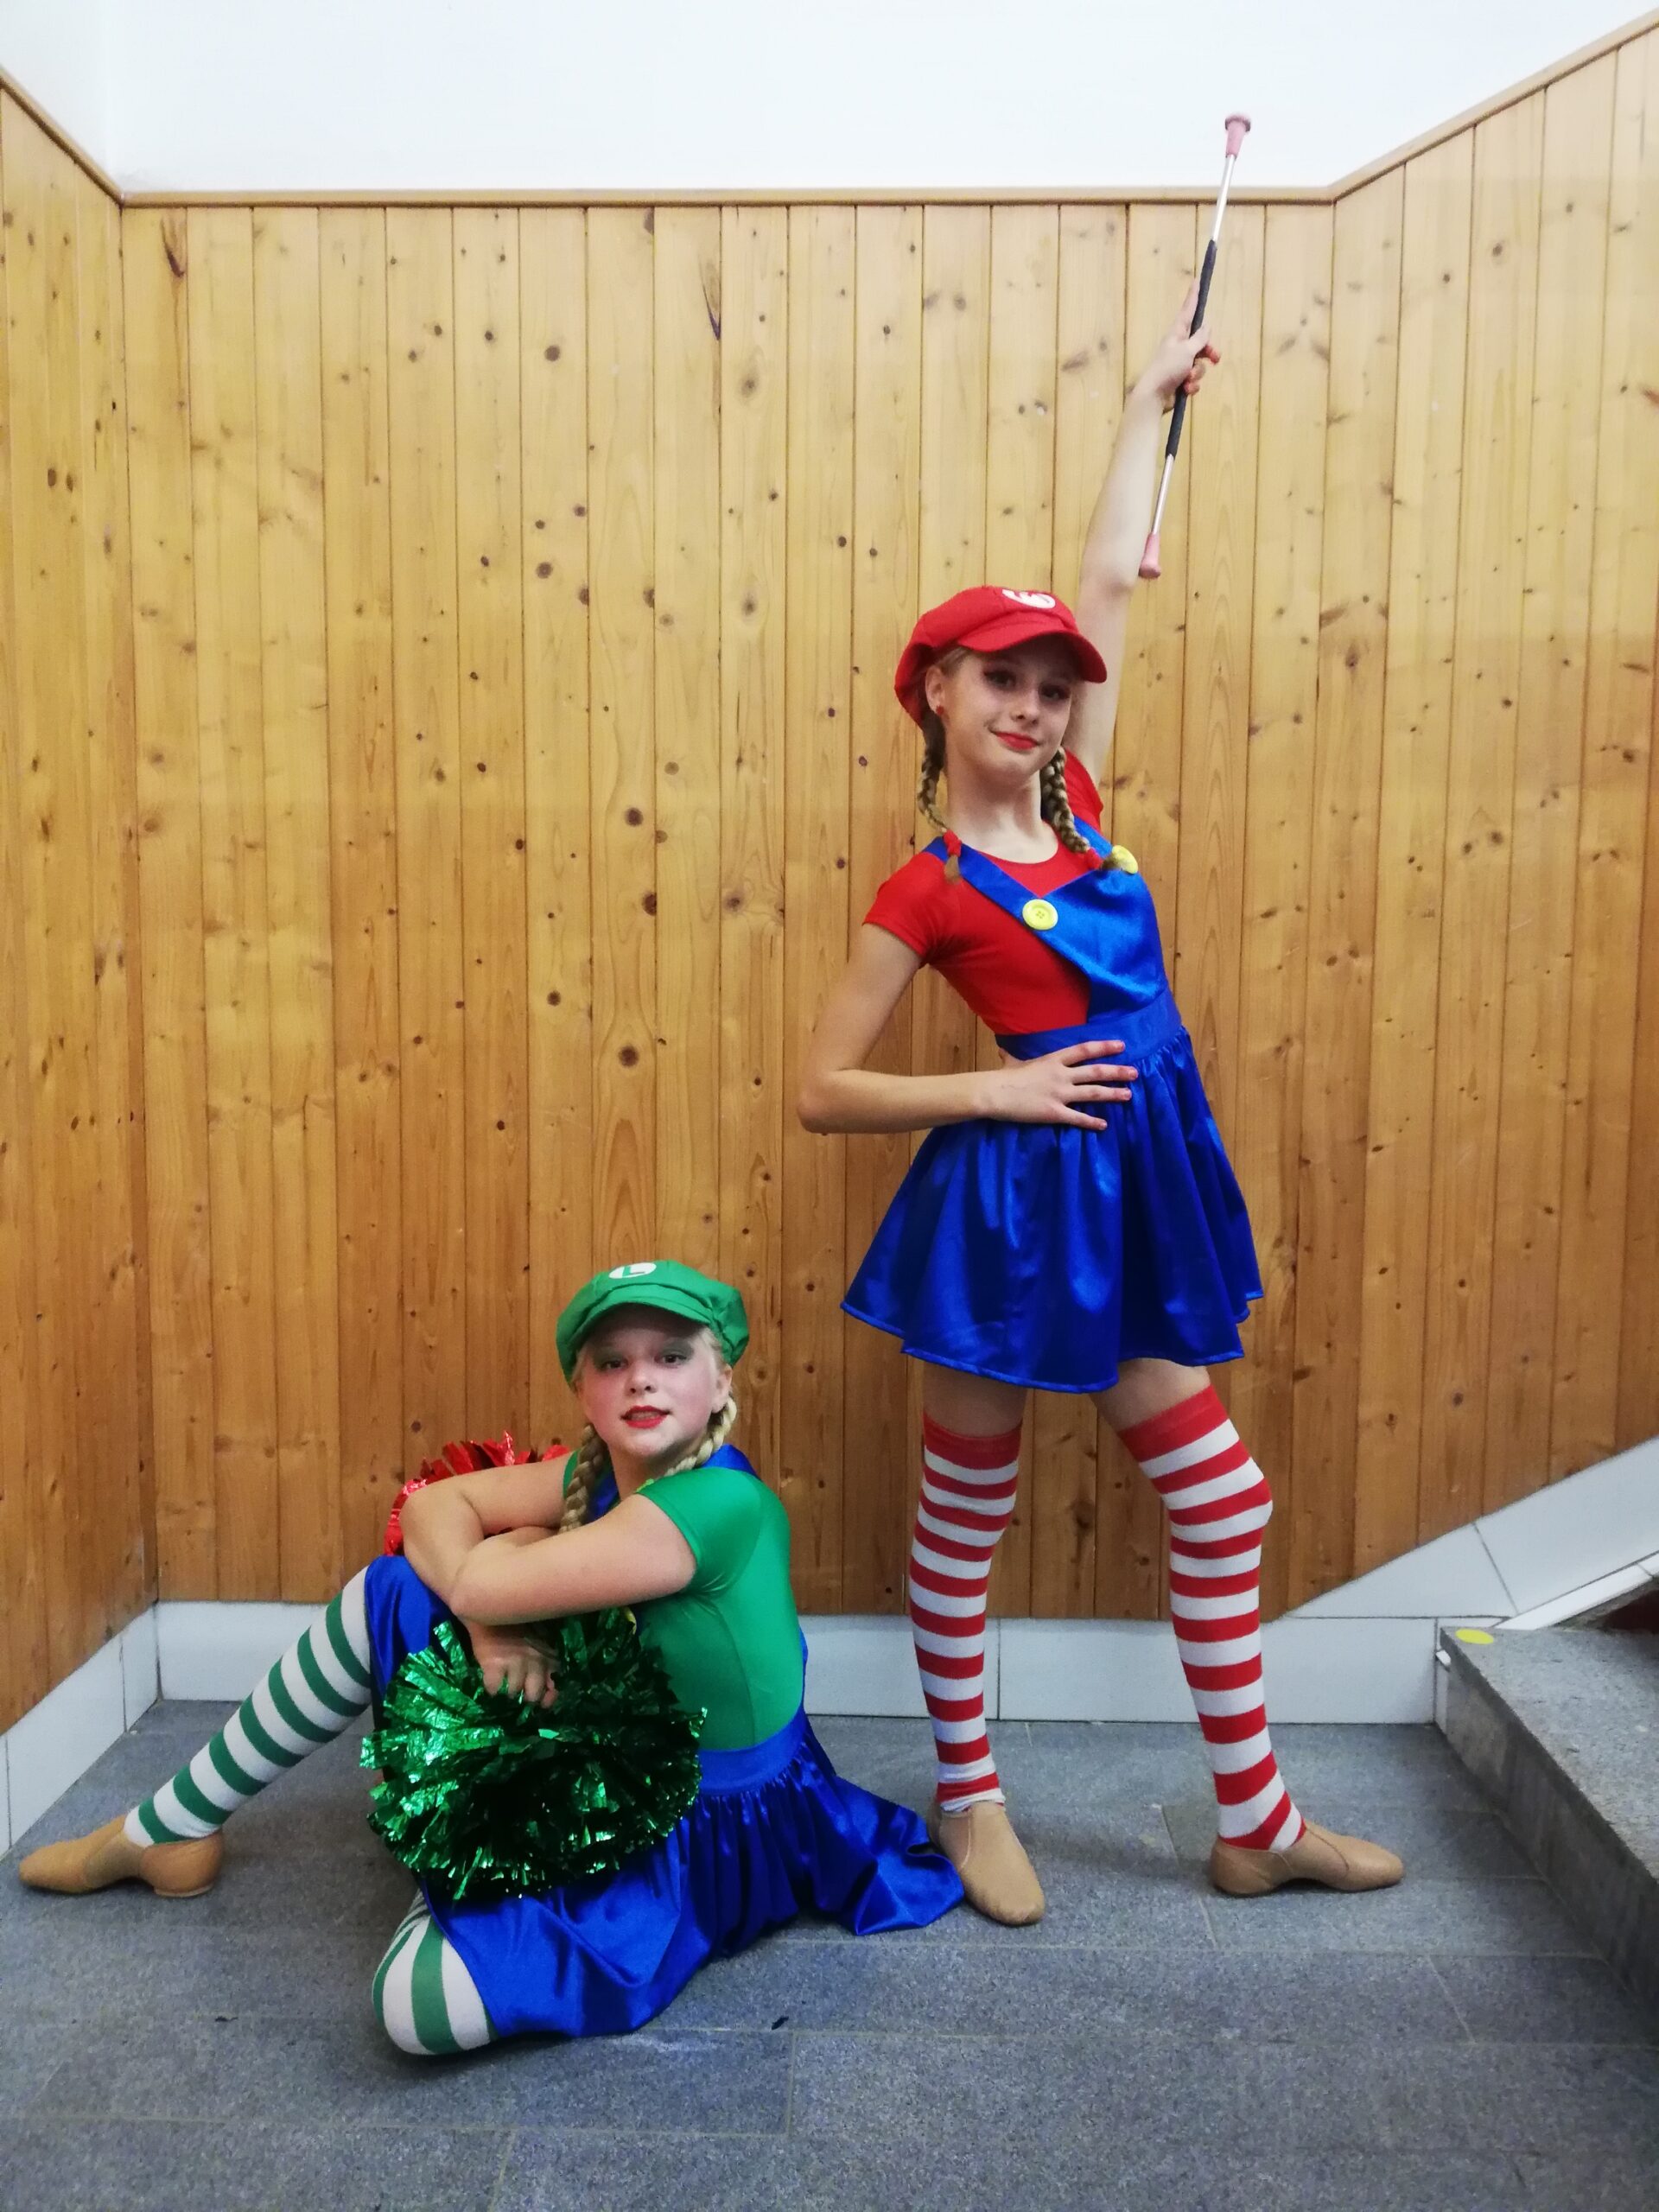 BAČKOVSKÁ, ZEGA "Super Mario" Pom Pom Kadet Duo-Trio (Monika Hejčlová) – 2. místo celostátní výsledky